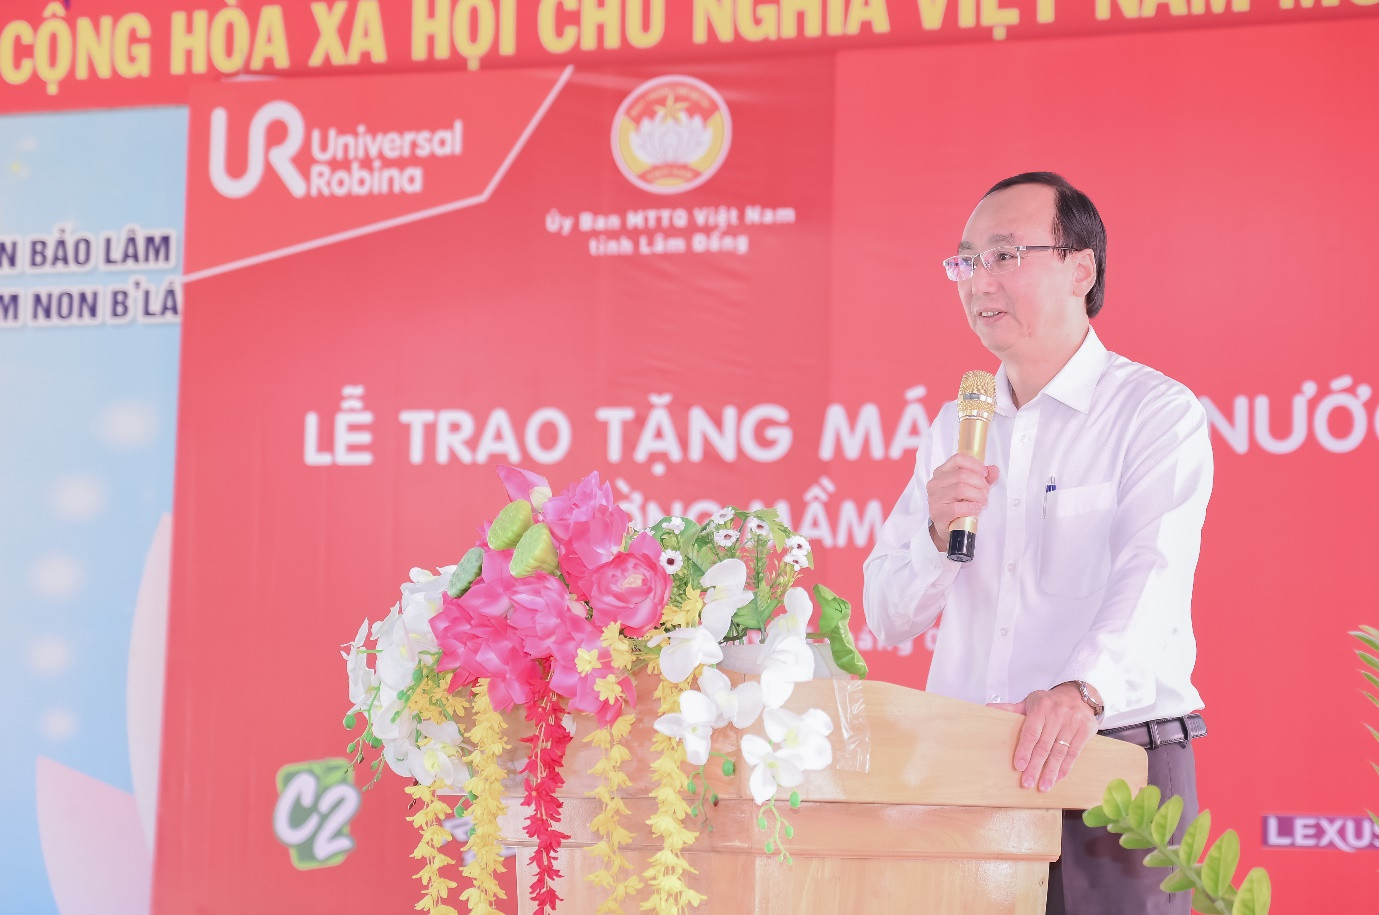 Ông Bùi Xuân Quý - Uỷ viên Ban Thường vụ, Chủ tịch Uỷ ban Mặt trận Tổ quốc huyện Bảo Lâm đại diện chính quyền phát biểu tại lễ trao tặng máy lọc nước tại Trường mầm non B’Lá.